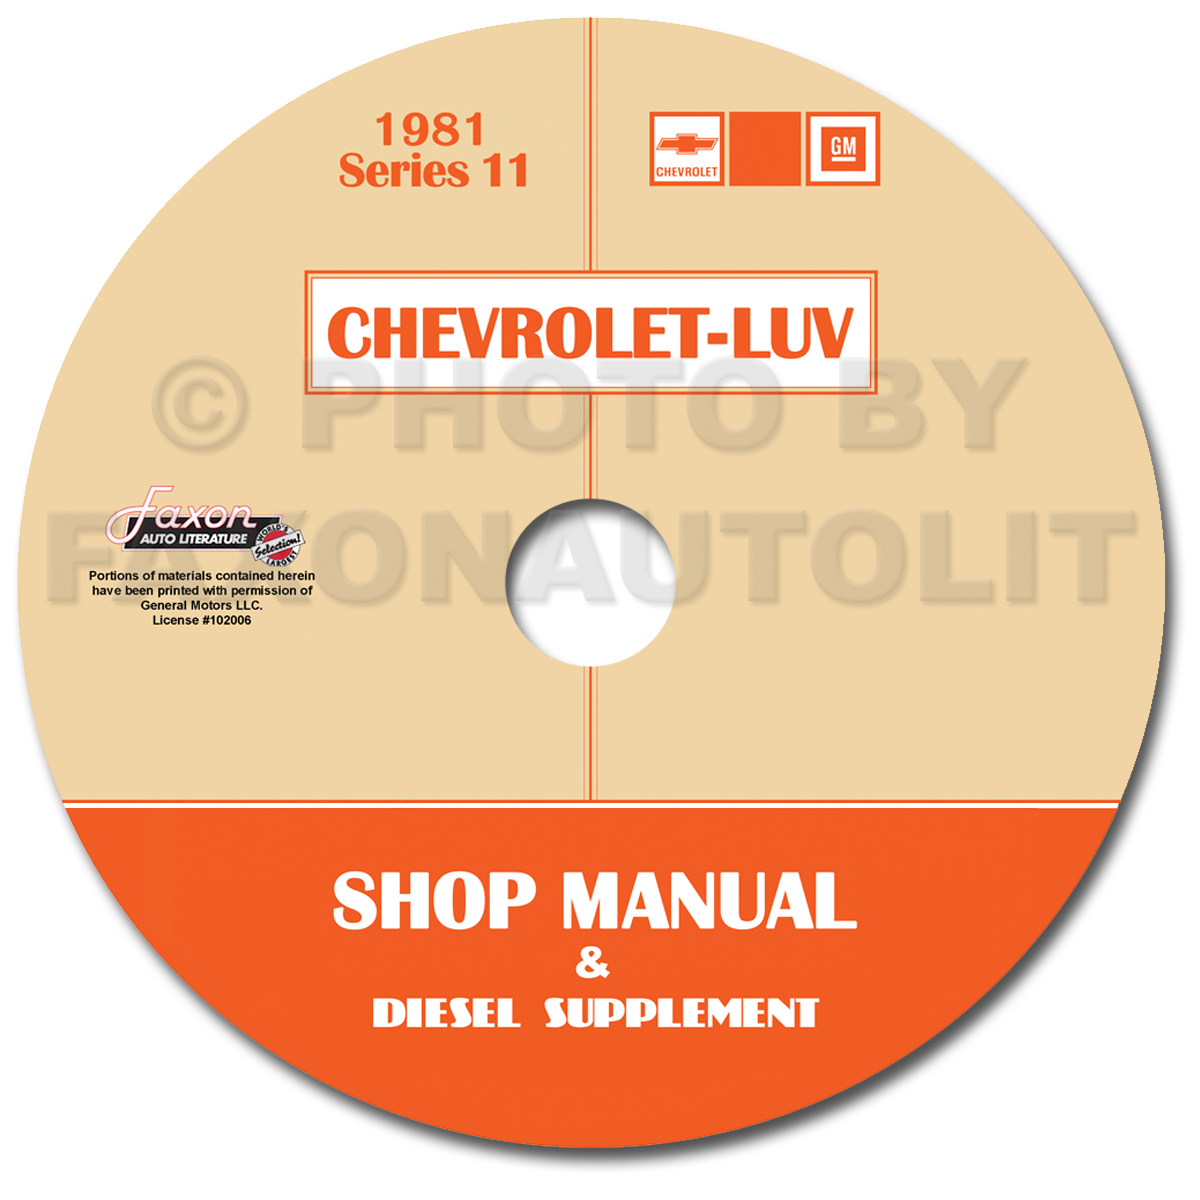 1978-1982 Chevrolet Luv Series 7-12 Shop Manual CD-ROM